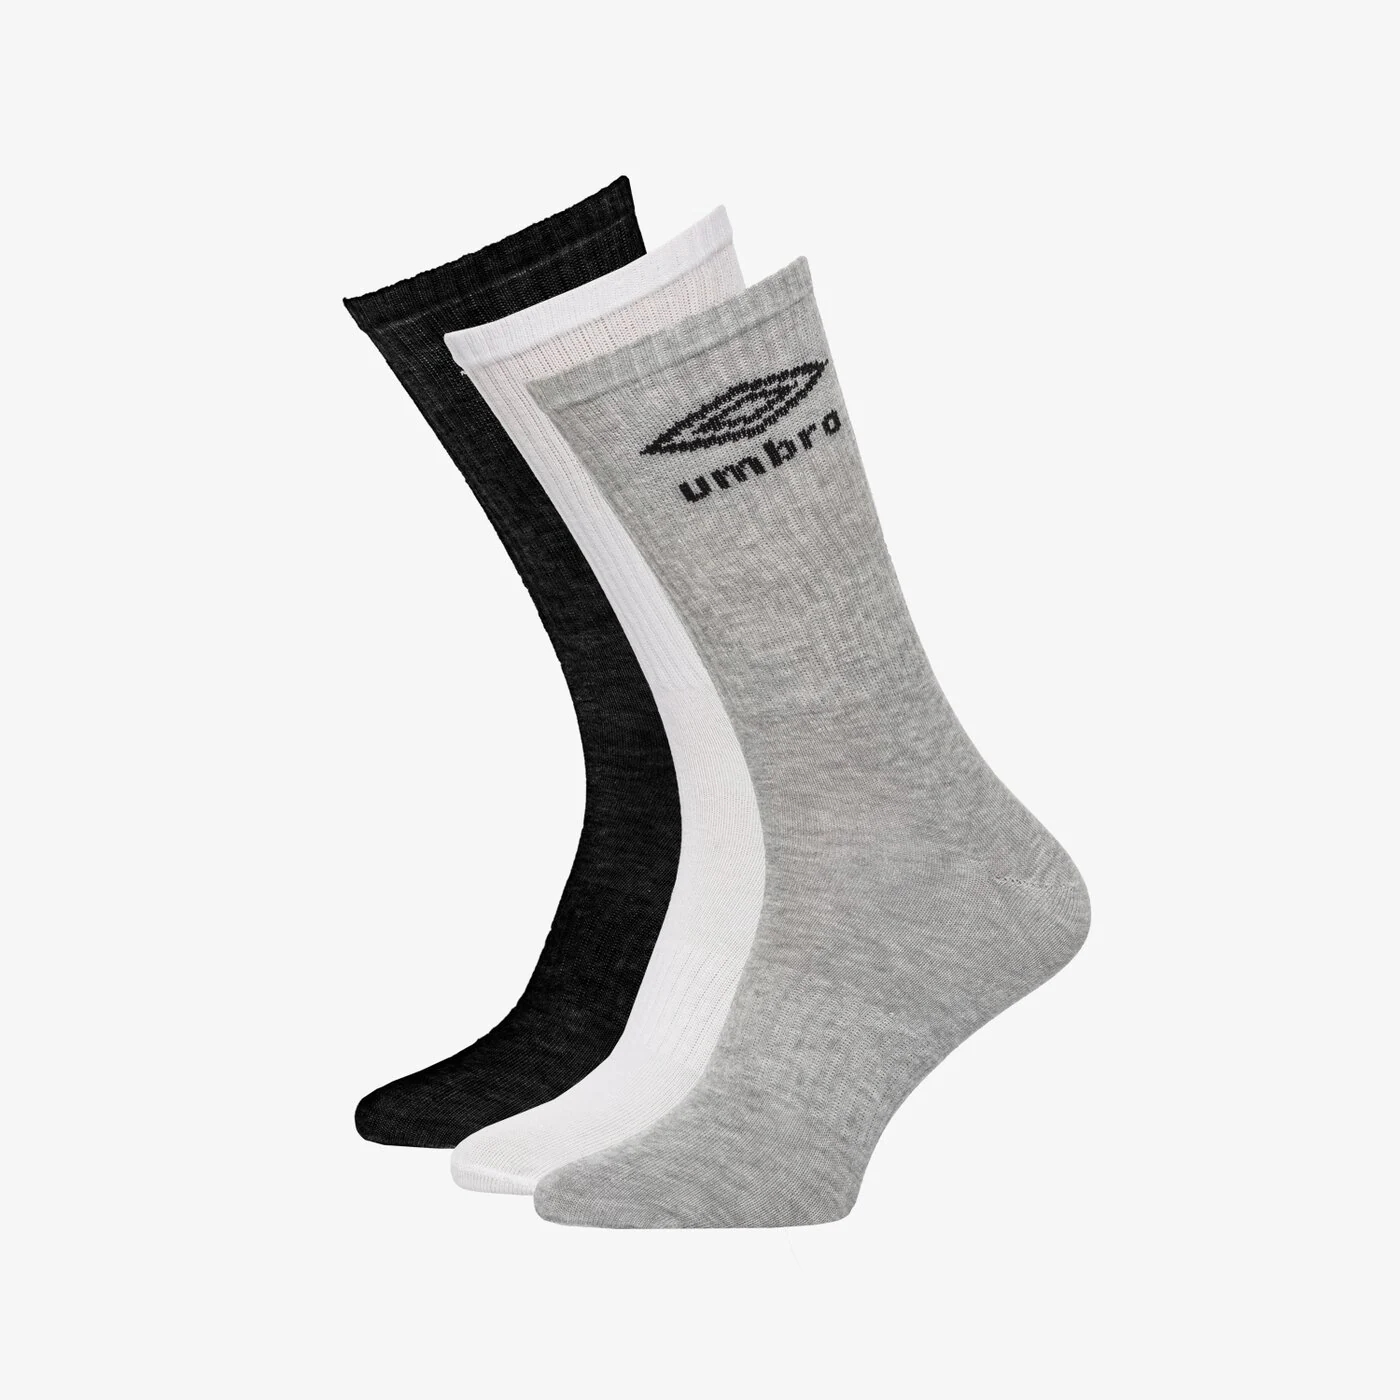 Носки длинные Umbro, 3 пары, серый / черный / белый носки длинные с 1108 цвет белый черный серый размер 23 25 3 пары